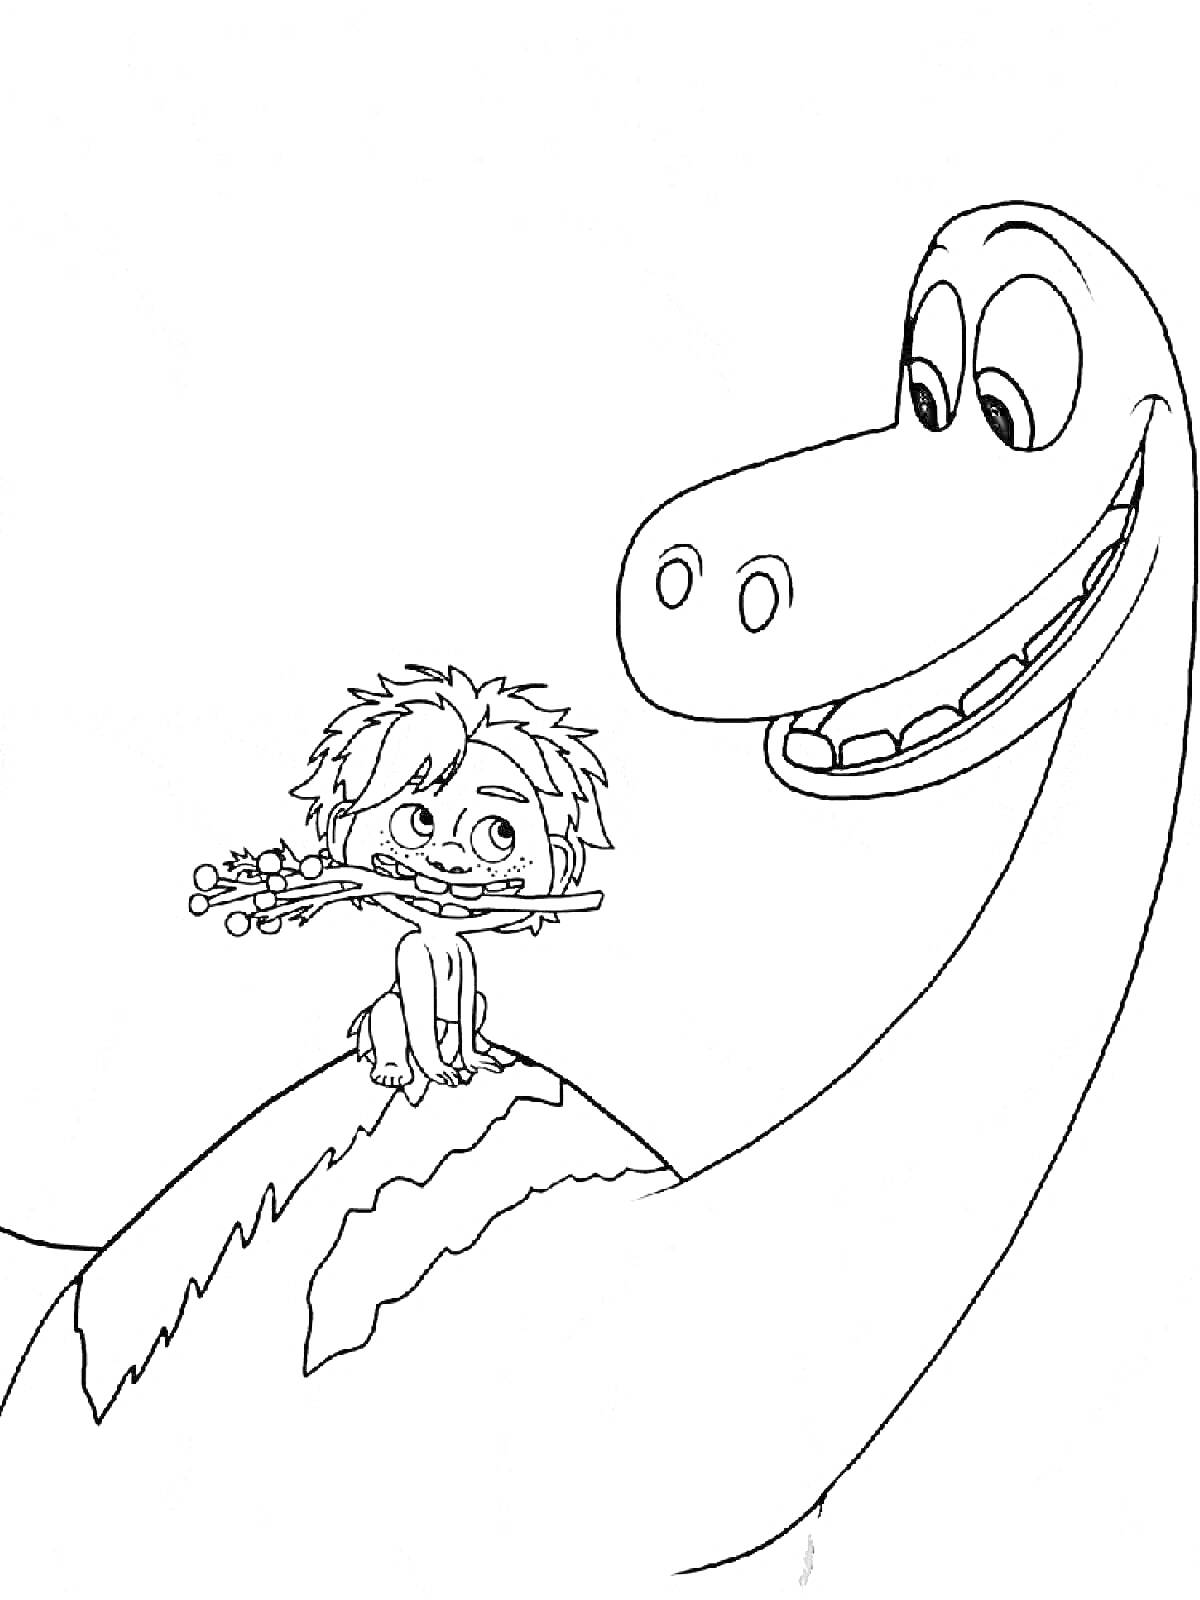 Человек с прутиком во рту верхом на динозавре